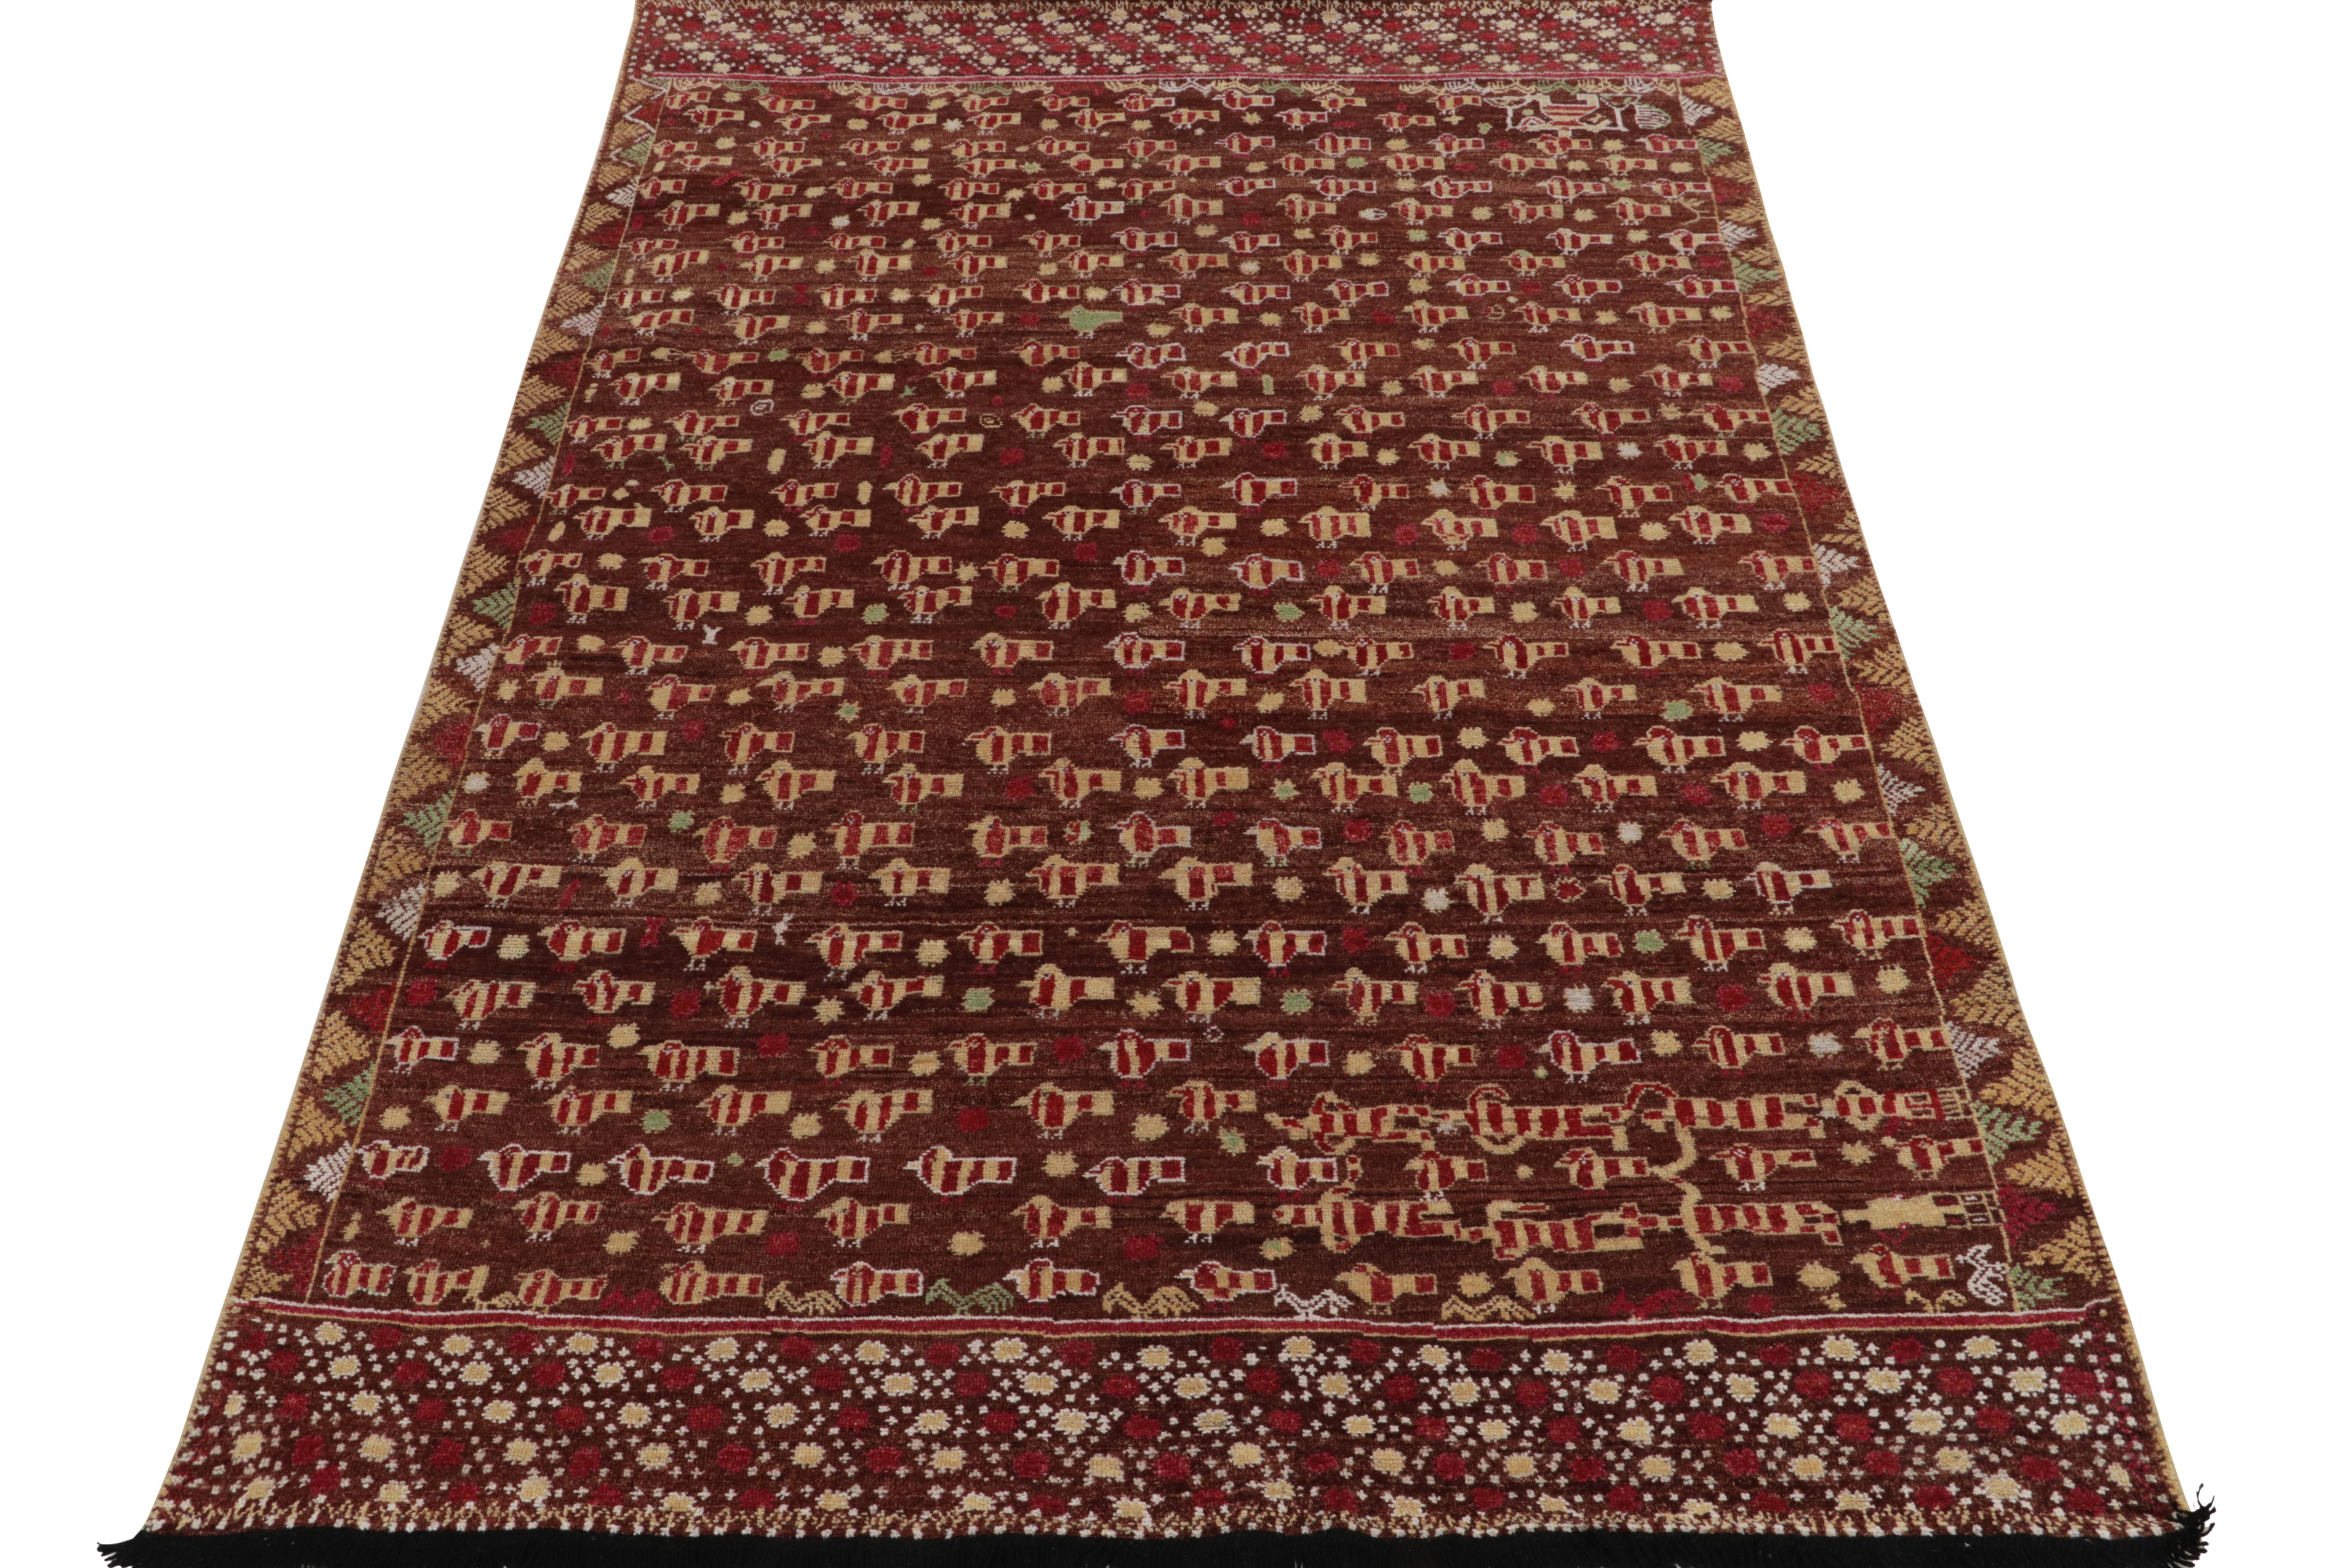 Tissé à la main en laine fine, ce tapis 6x9 de notre collection Burano adapte magnifiquement l'inspiration de l'art folklorique Phulkari à un velours riche et contemporain. Cette vision donne naissance à une interprétation délicate d'oiseaux